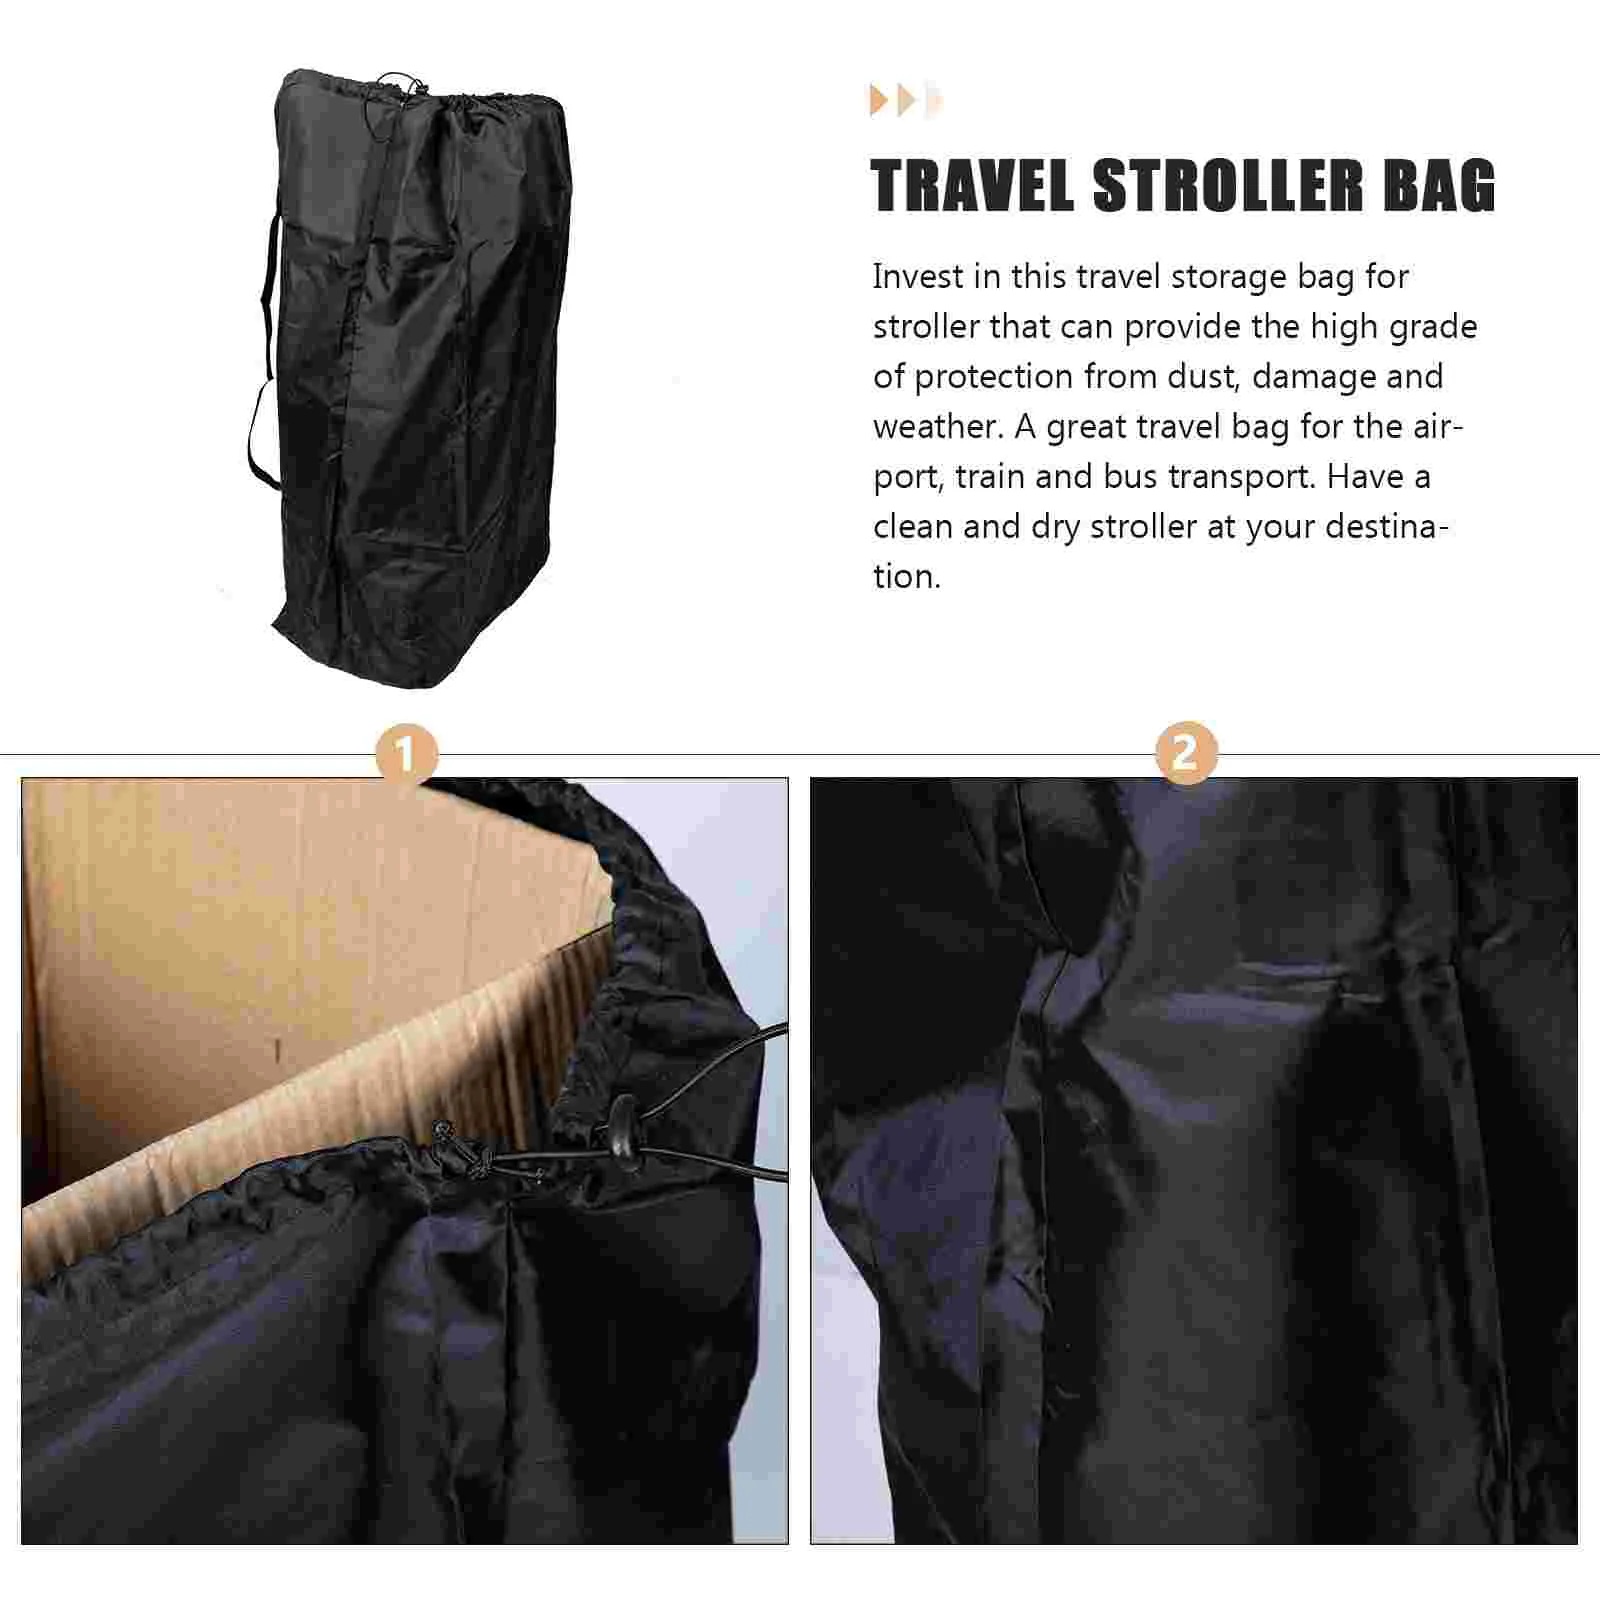 Large Practical Smooth Stroller Travel Bag Stroller Cover for Travel Stroller Check Bag for Airplane